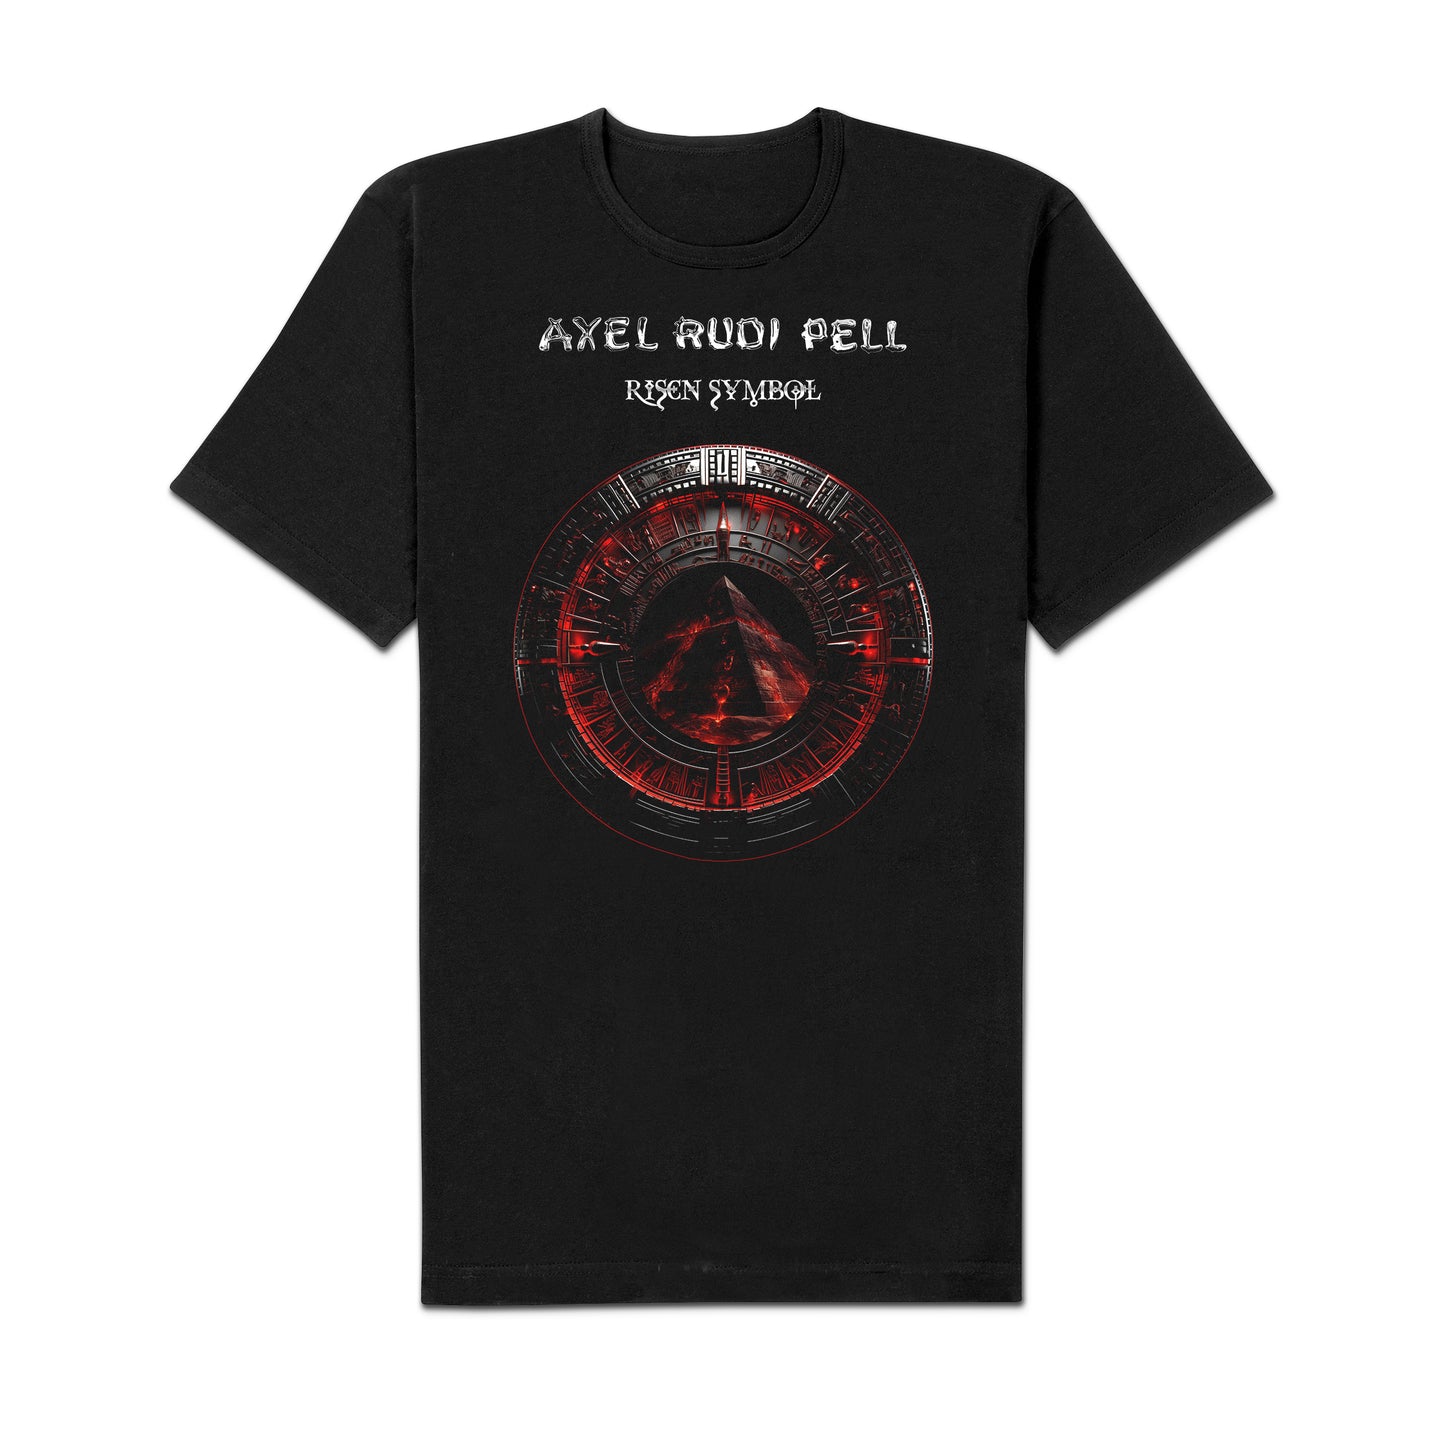 Axel Rudi Pell "Risen Symbol" Box-LP-LP-CD-Bundle "Symbol"